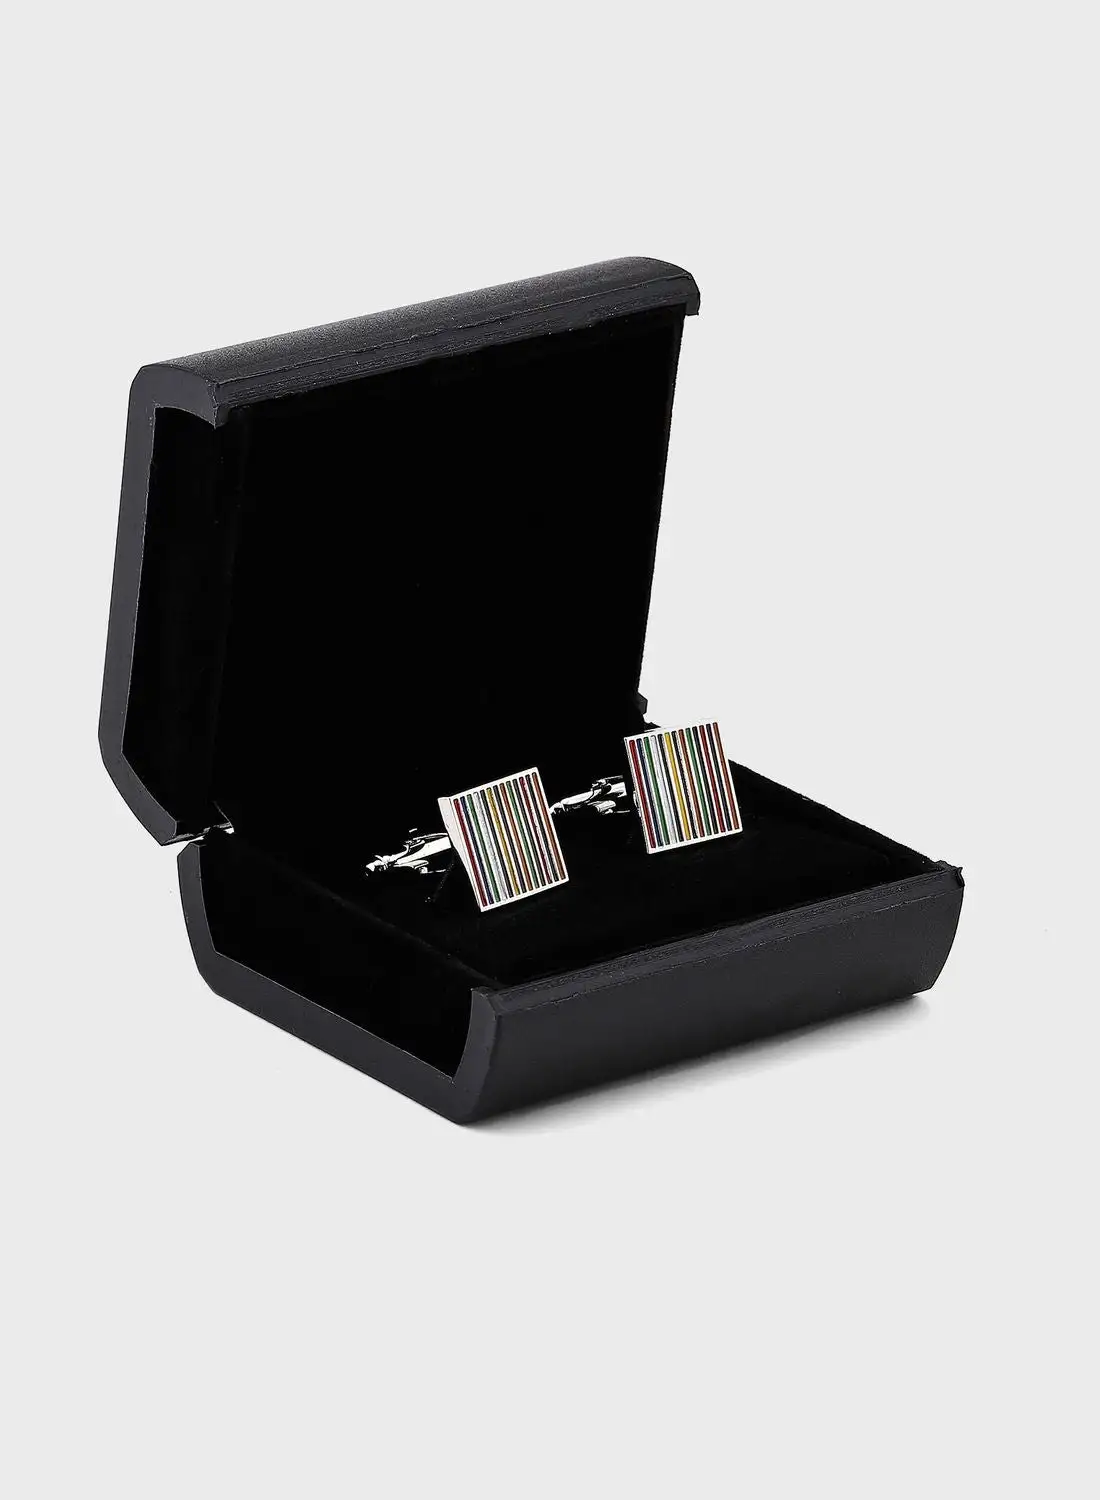 Robert Wood Multi Stripe Cufflink In A Gift Box